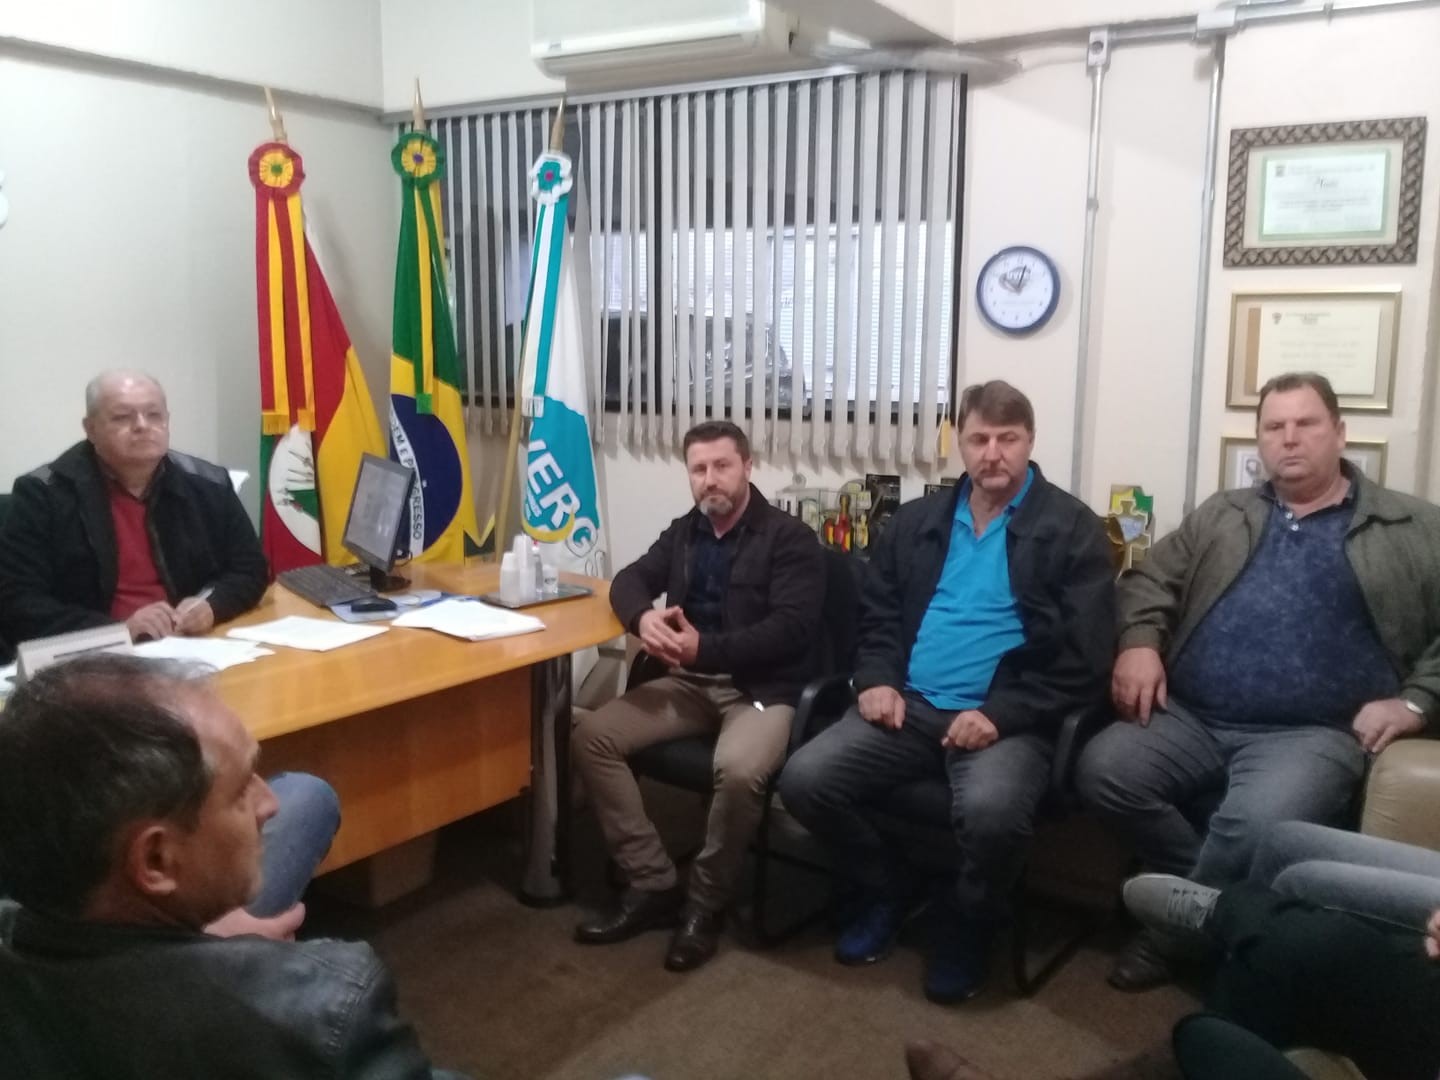 Agenda na UVERGS( União Dos Vereadores Do Estado Do Rio Grande do Sul) juntamente com colegas vereadores de outros municípios discutindo ações e estratégias para a crise econômica e social que atinge os municípios.